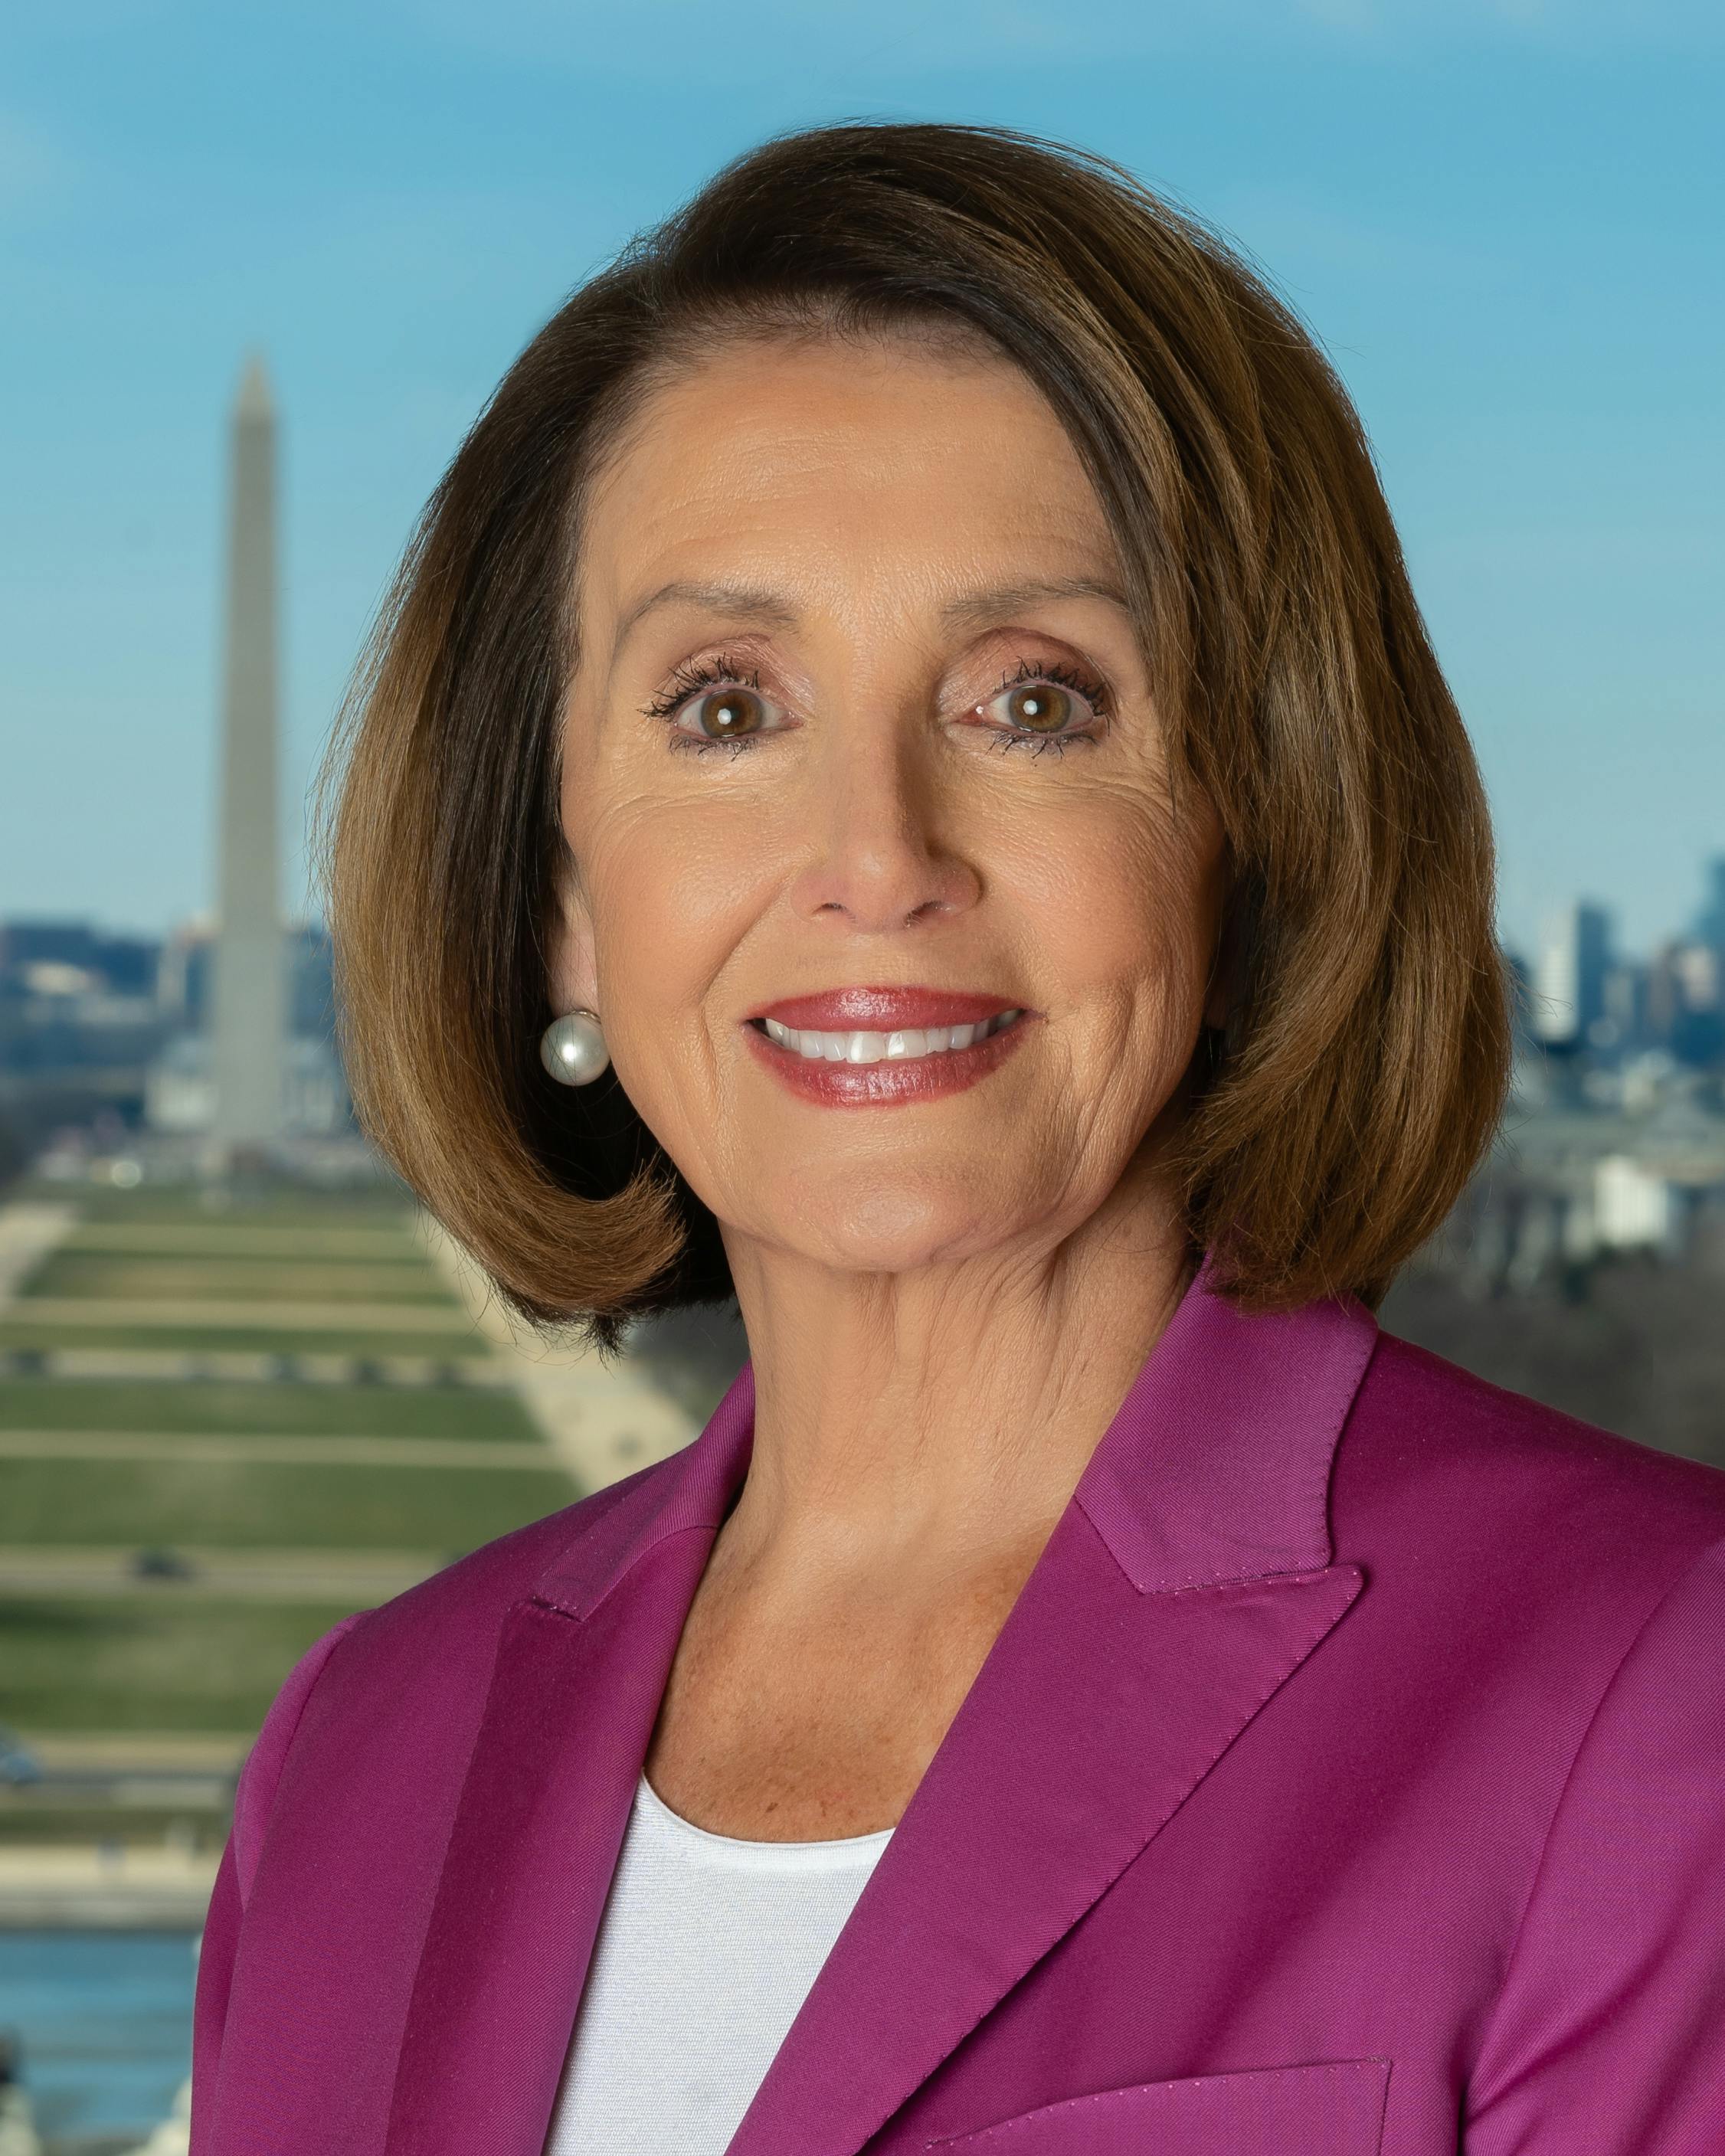 Profile picture of Nancy Pelosi